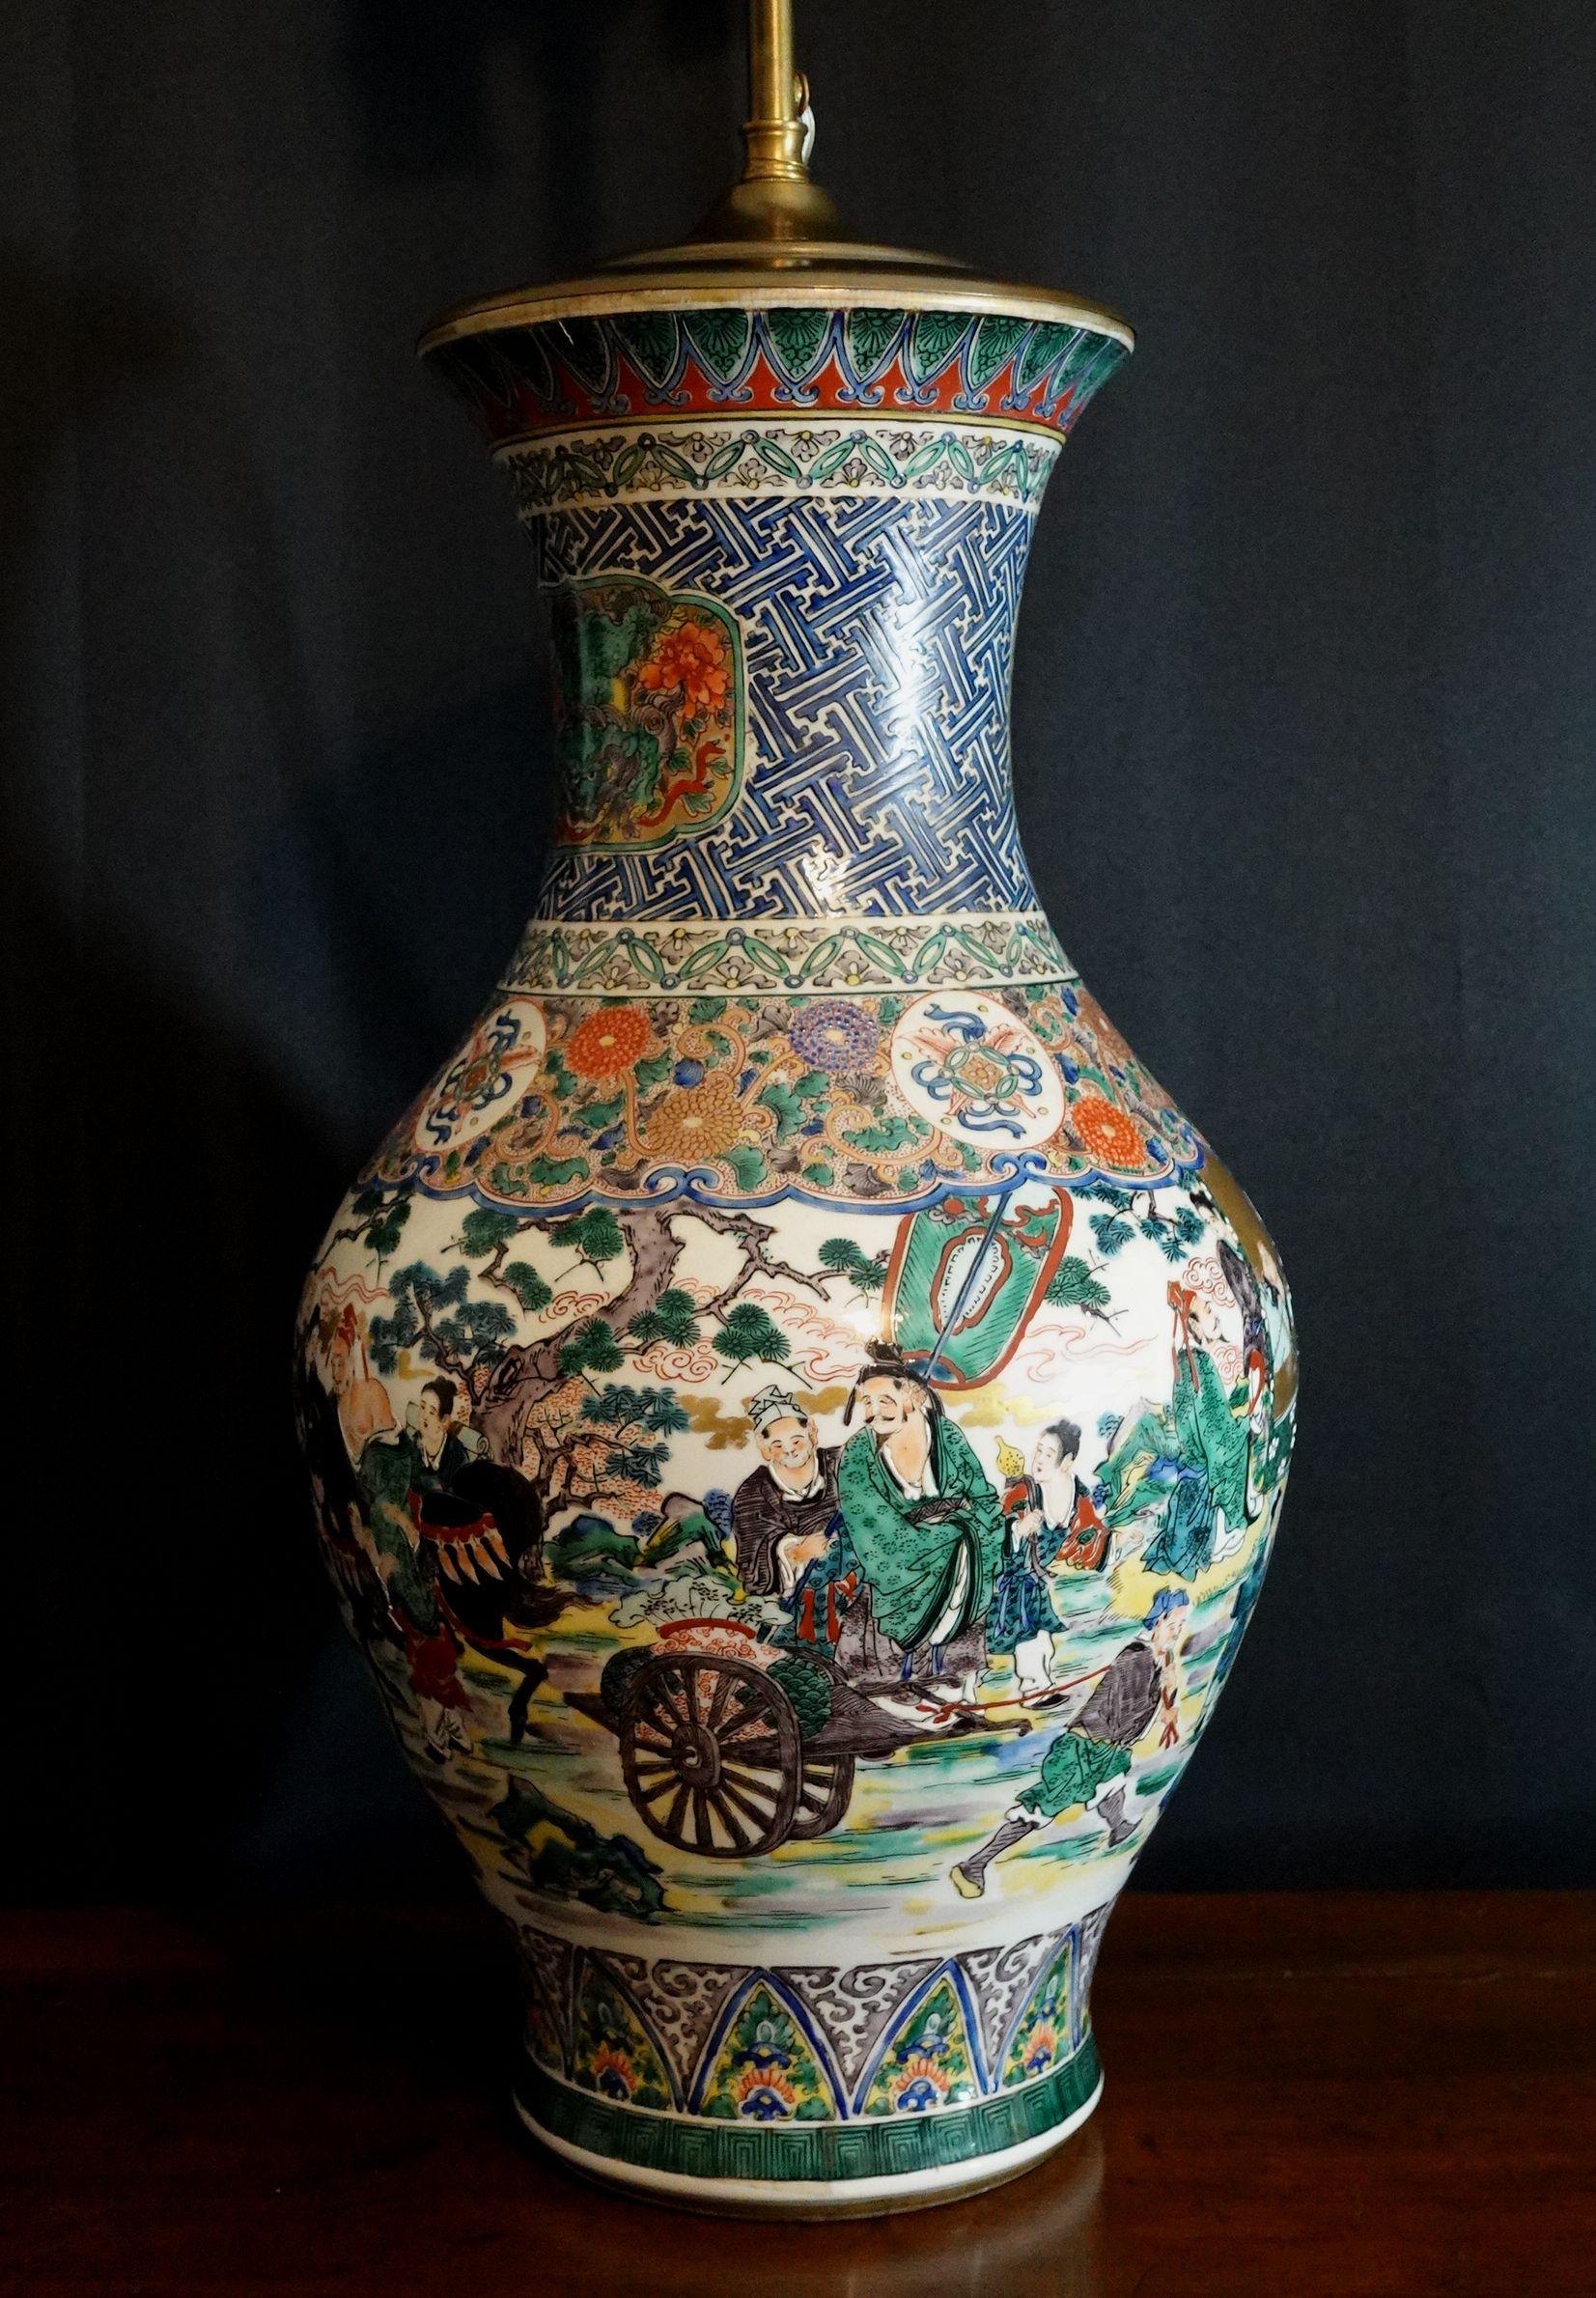 Vase en porcelaine. Japon. 19ème siècle. Forme de balustre. L'article Kutani. Type de vert. Décoration de savants et de motifs de brocart. la hauteur du vase est de 18